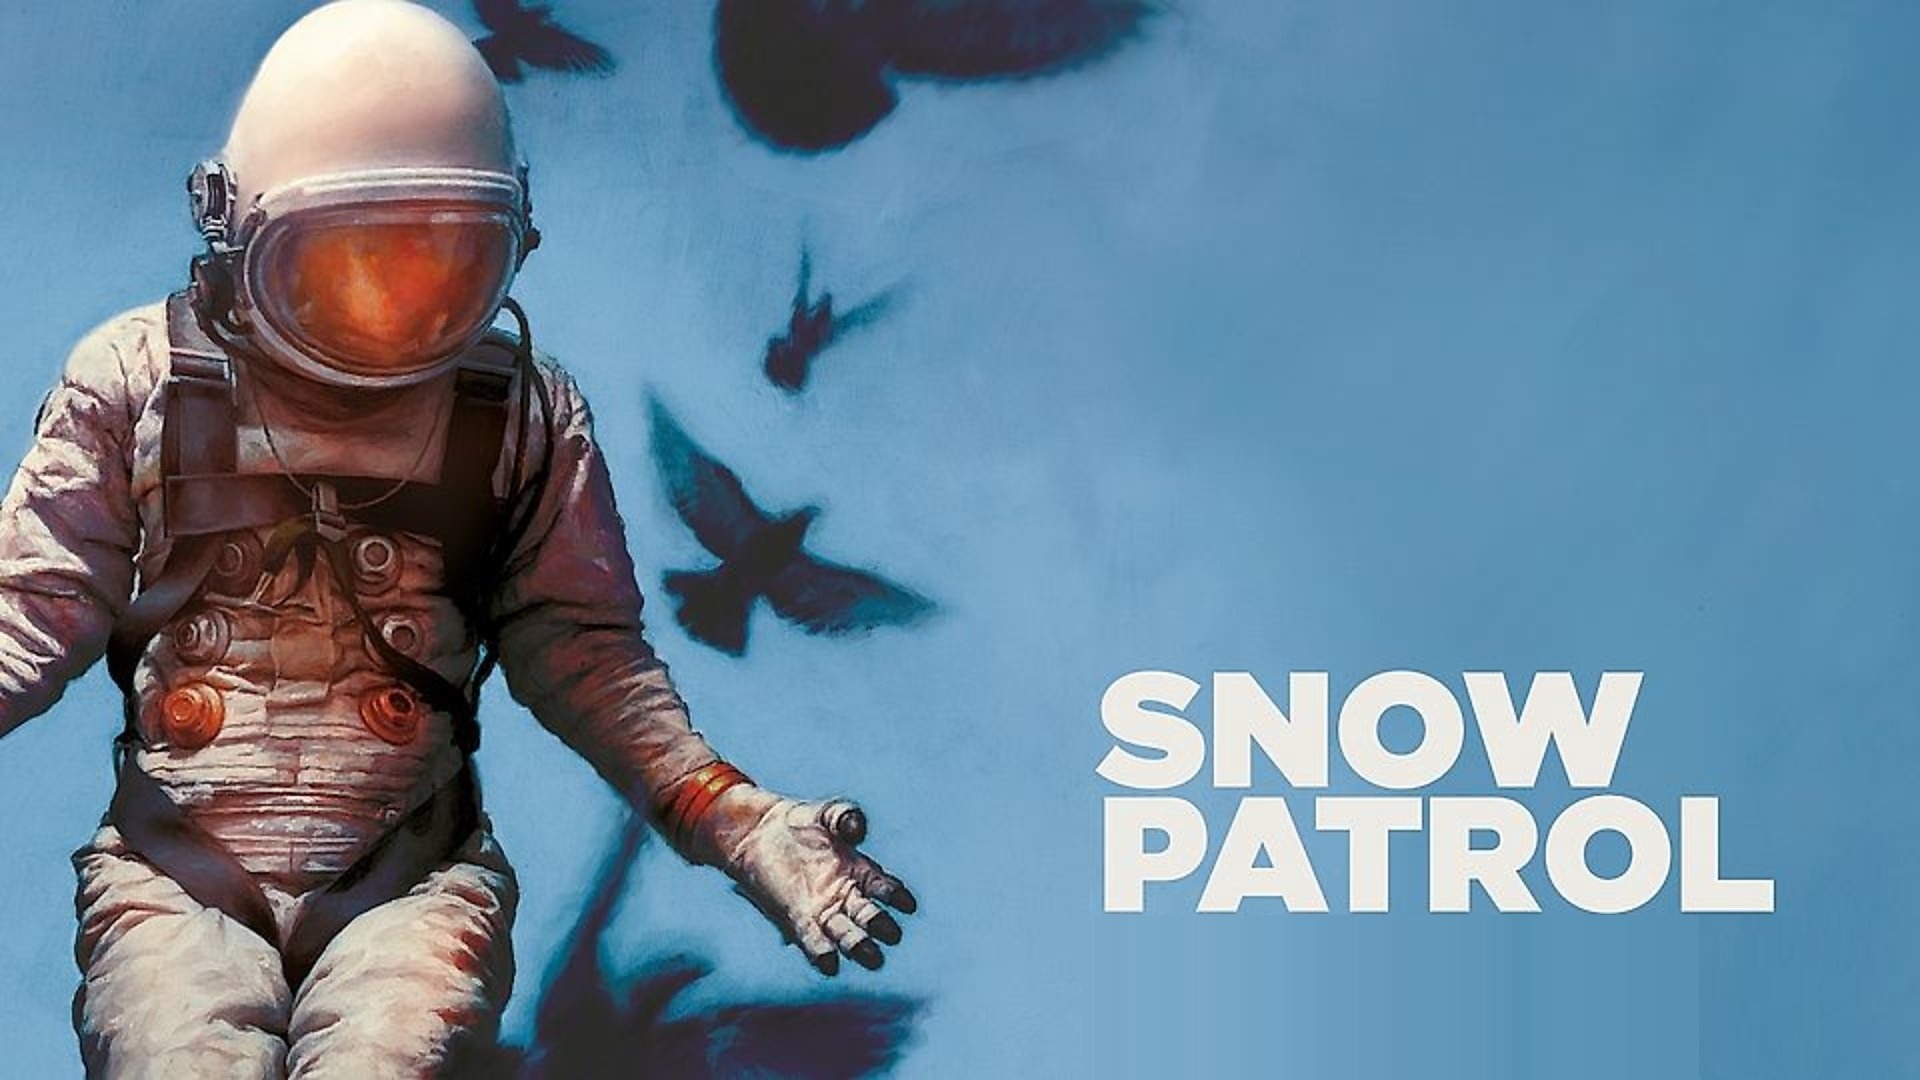 Snow Patrol Live Streaming - Coming Soon in UAE